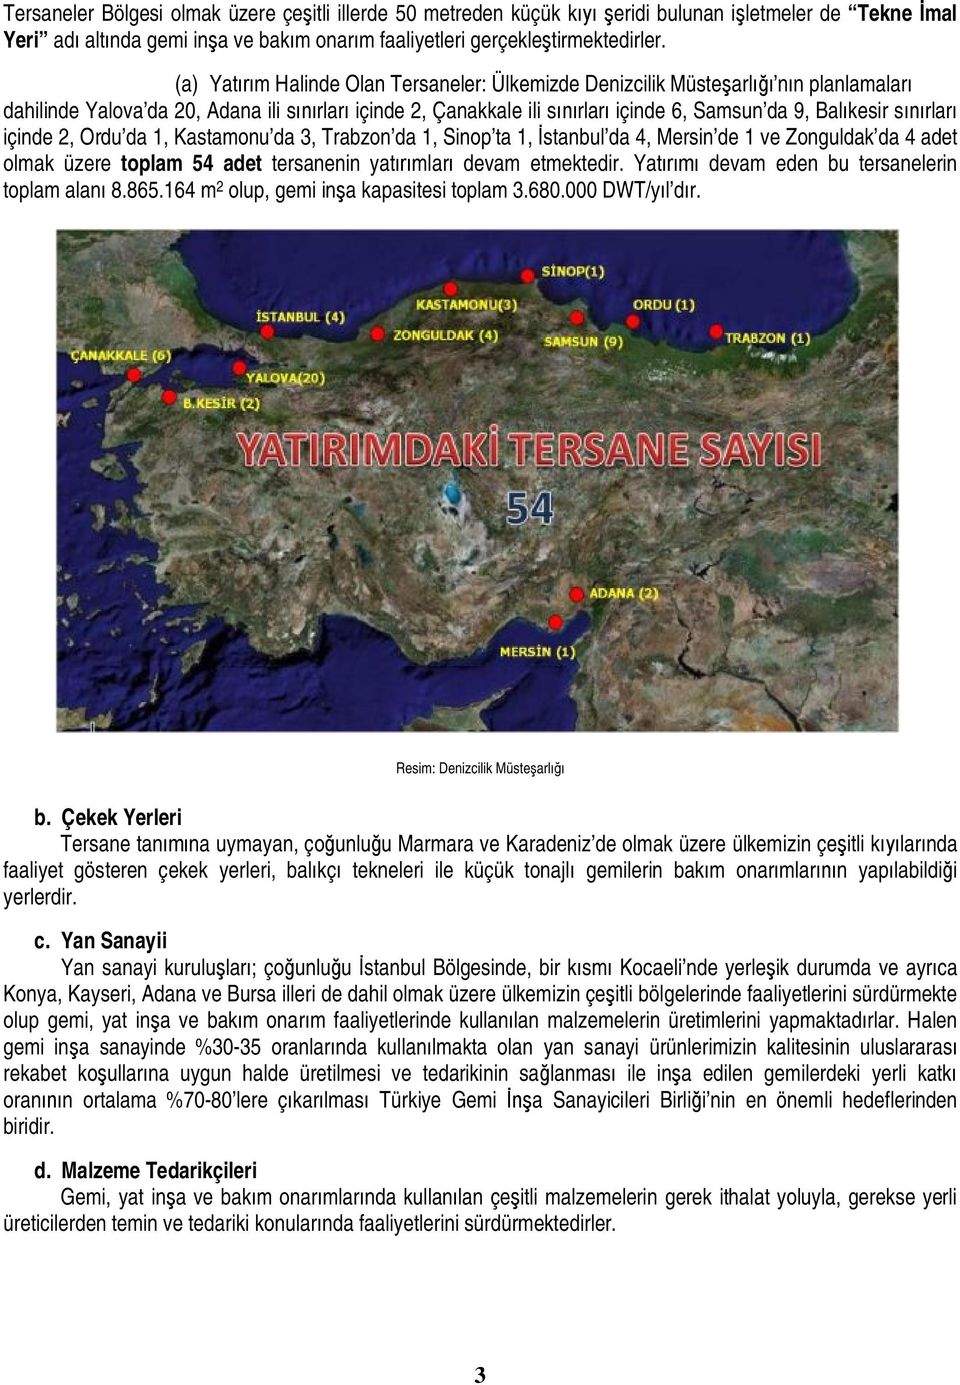 sınırları içinde 2, Ordu da 1, Kastamonu da 3, Trabzon da 1, Sinop ta 1, İstanbul da 4, Mersin de 1 ve Zonguldak da 4 adet olmak üzere toplam 54 adet tersanenin yatırımları devam etmektedir.